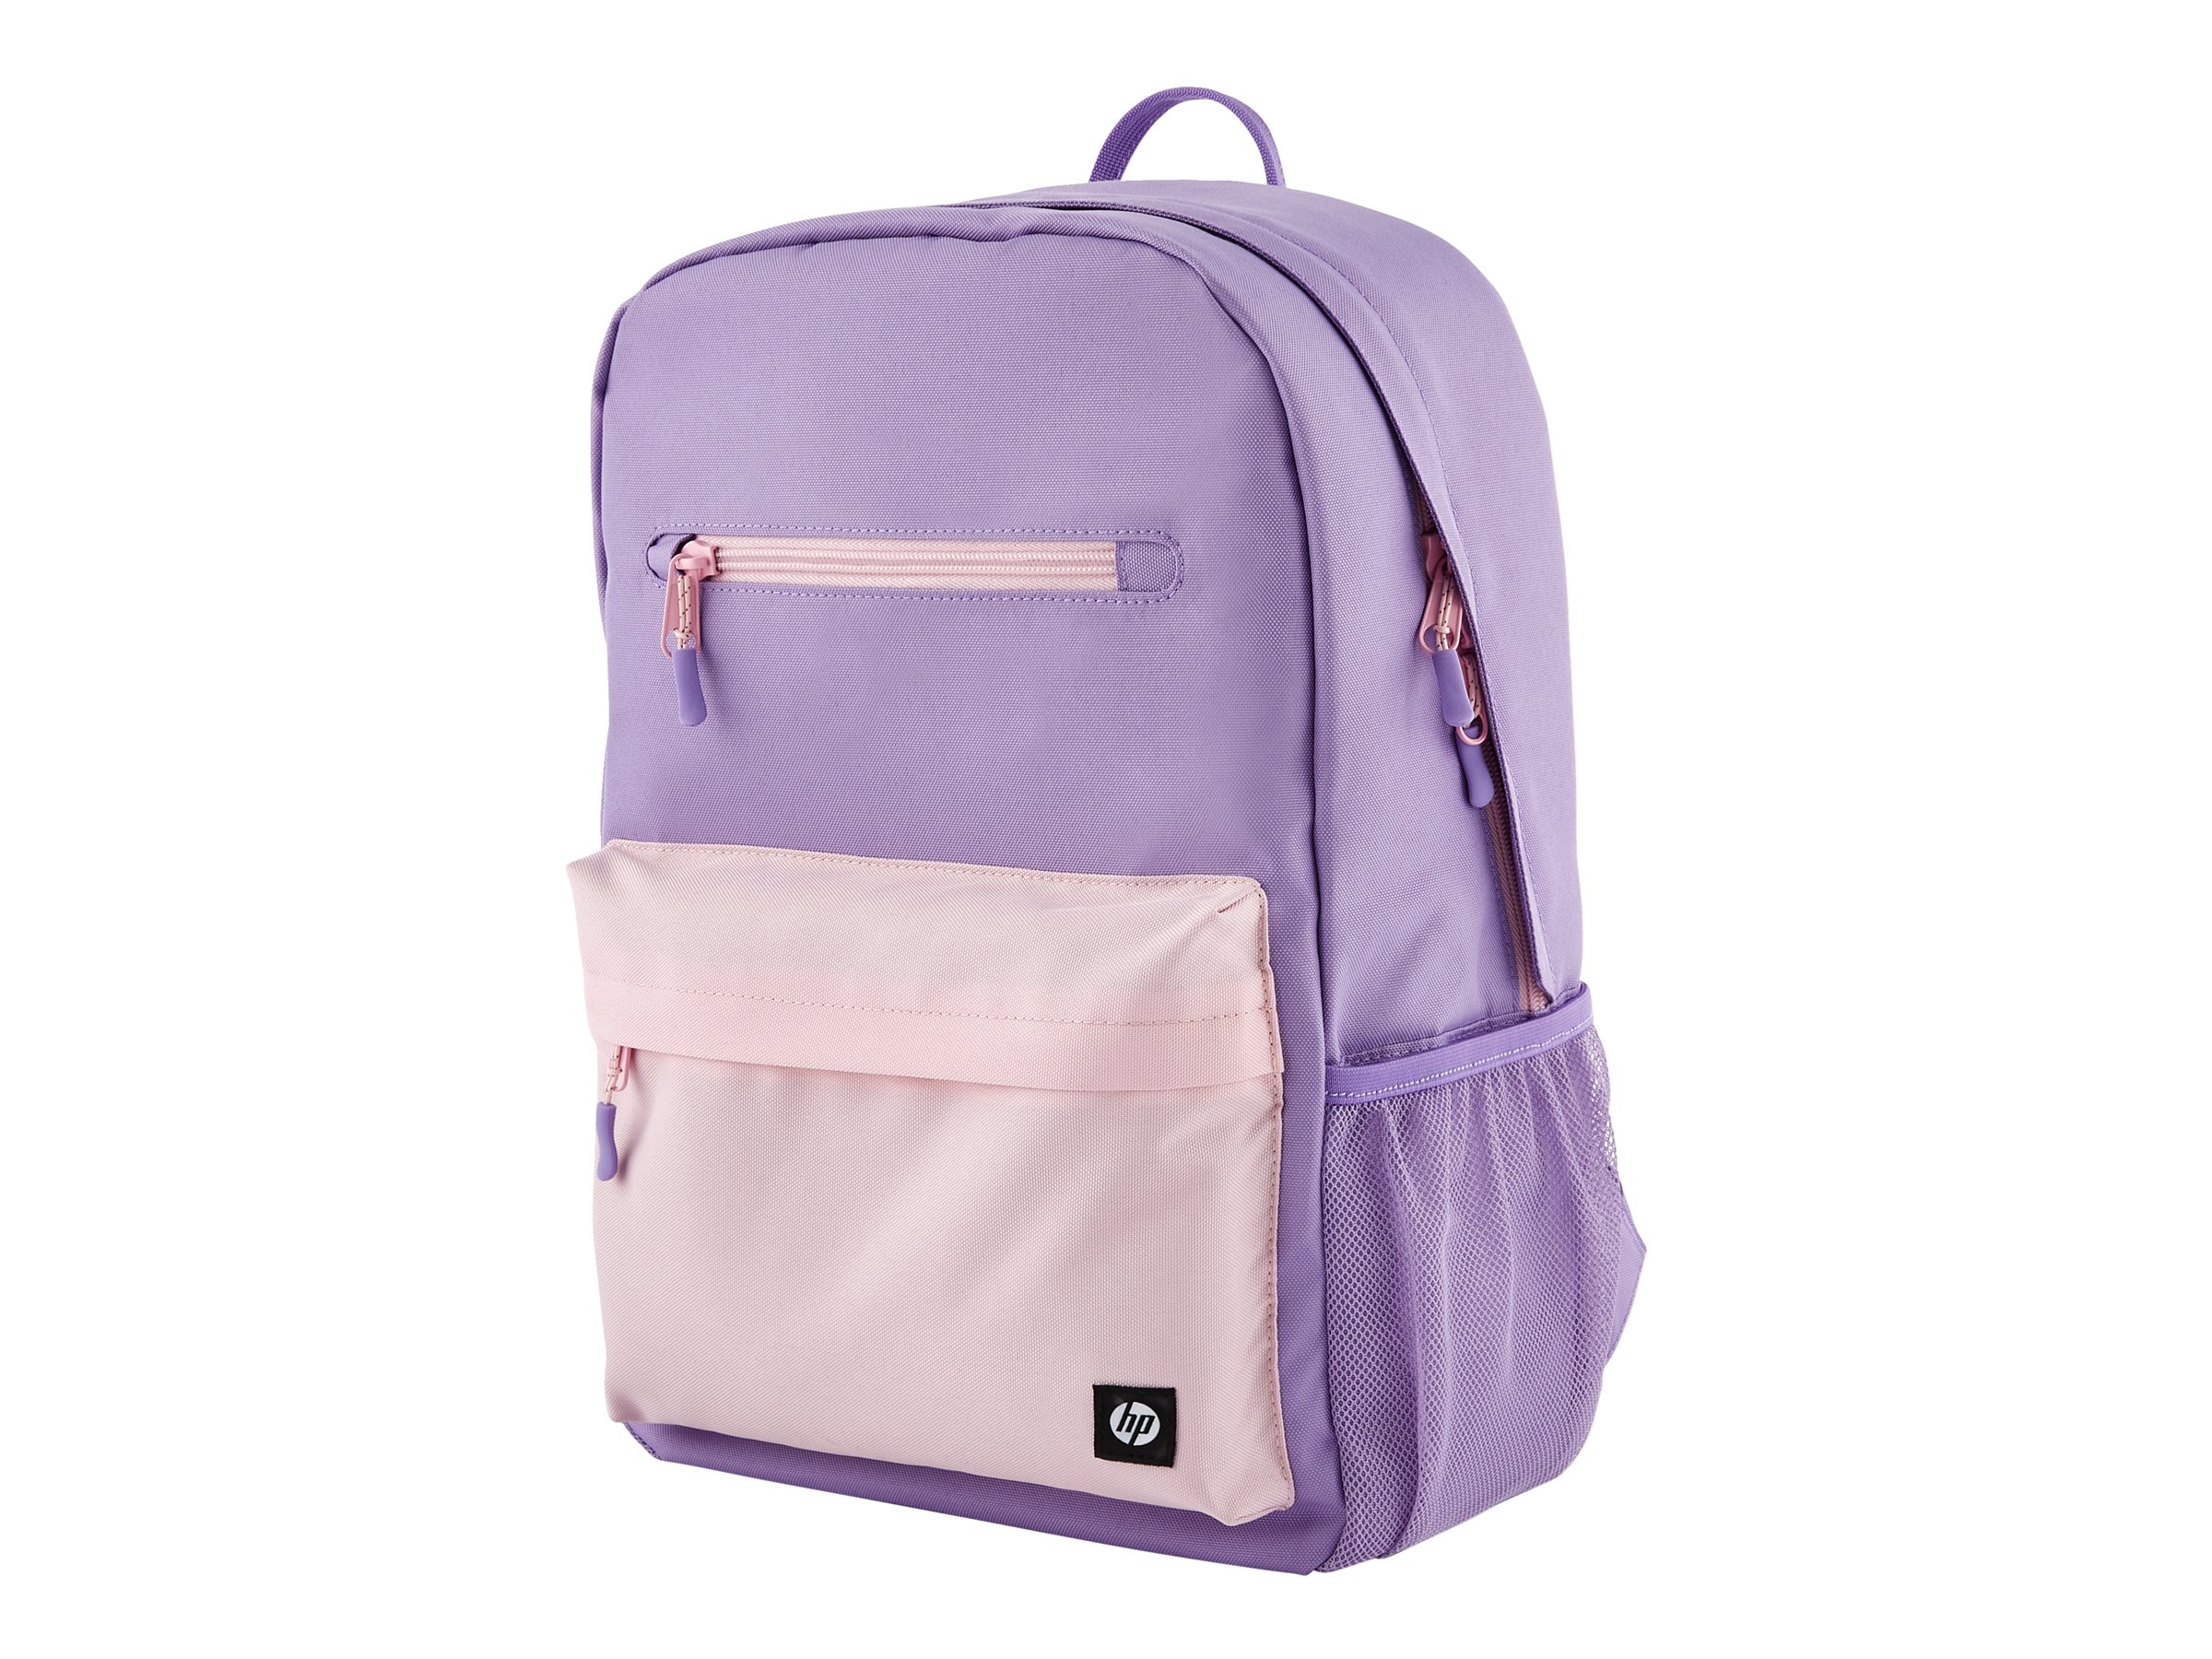 HP - Campus - sac à dos pour ordinateur portable - 15.6" - rose, mauve, mauve - 7J597AA - Sacoches pour ordinateur portable